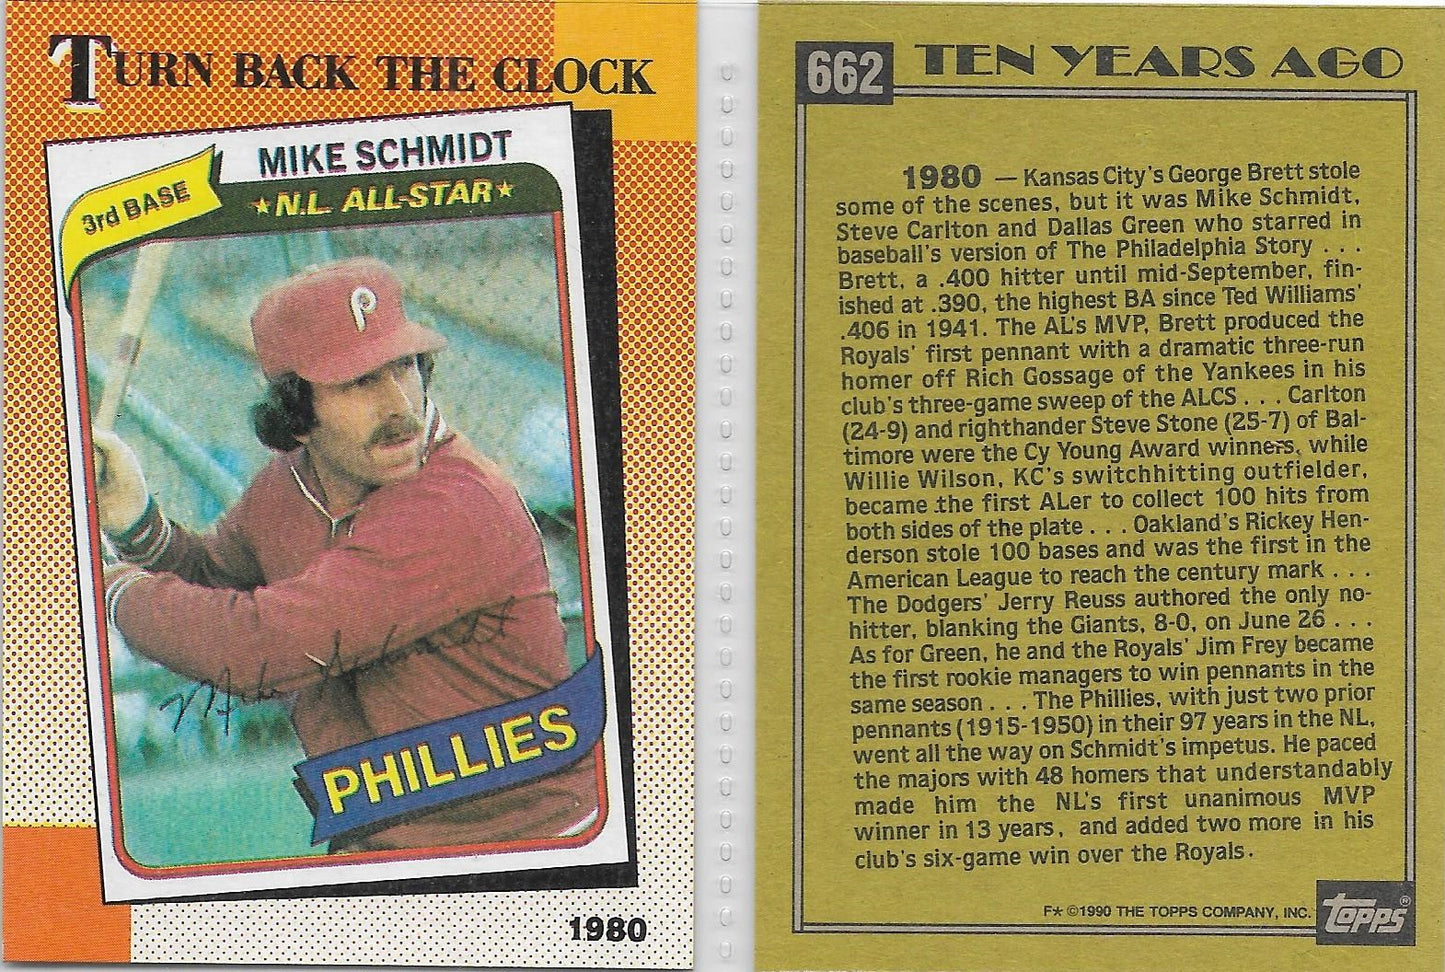 1990 TOPPS #662 MIKE SCHMIDT - PHILADELPHIA PHILLIES " TURN BACK THE CLOCK " CARD